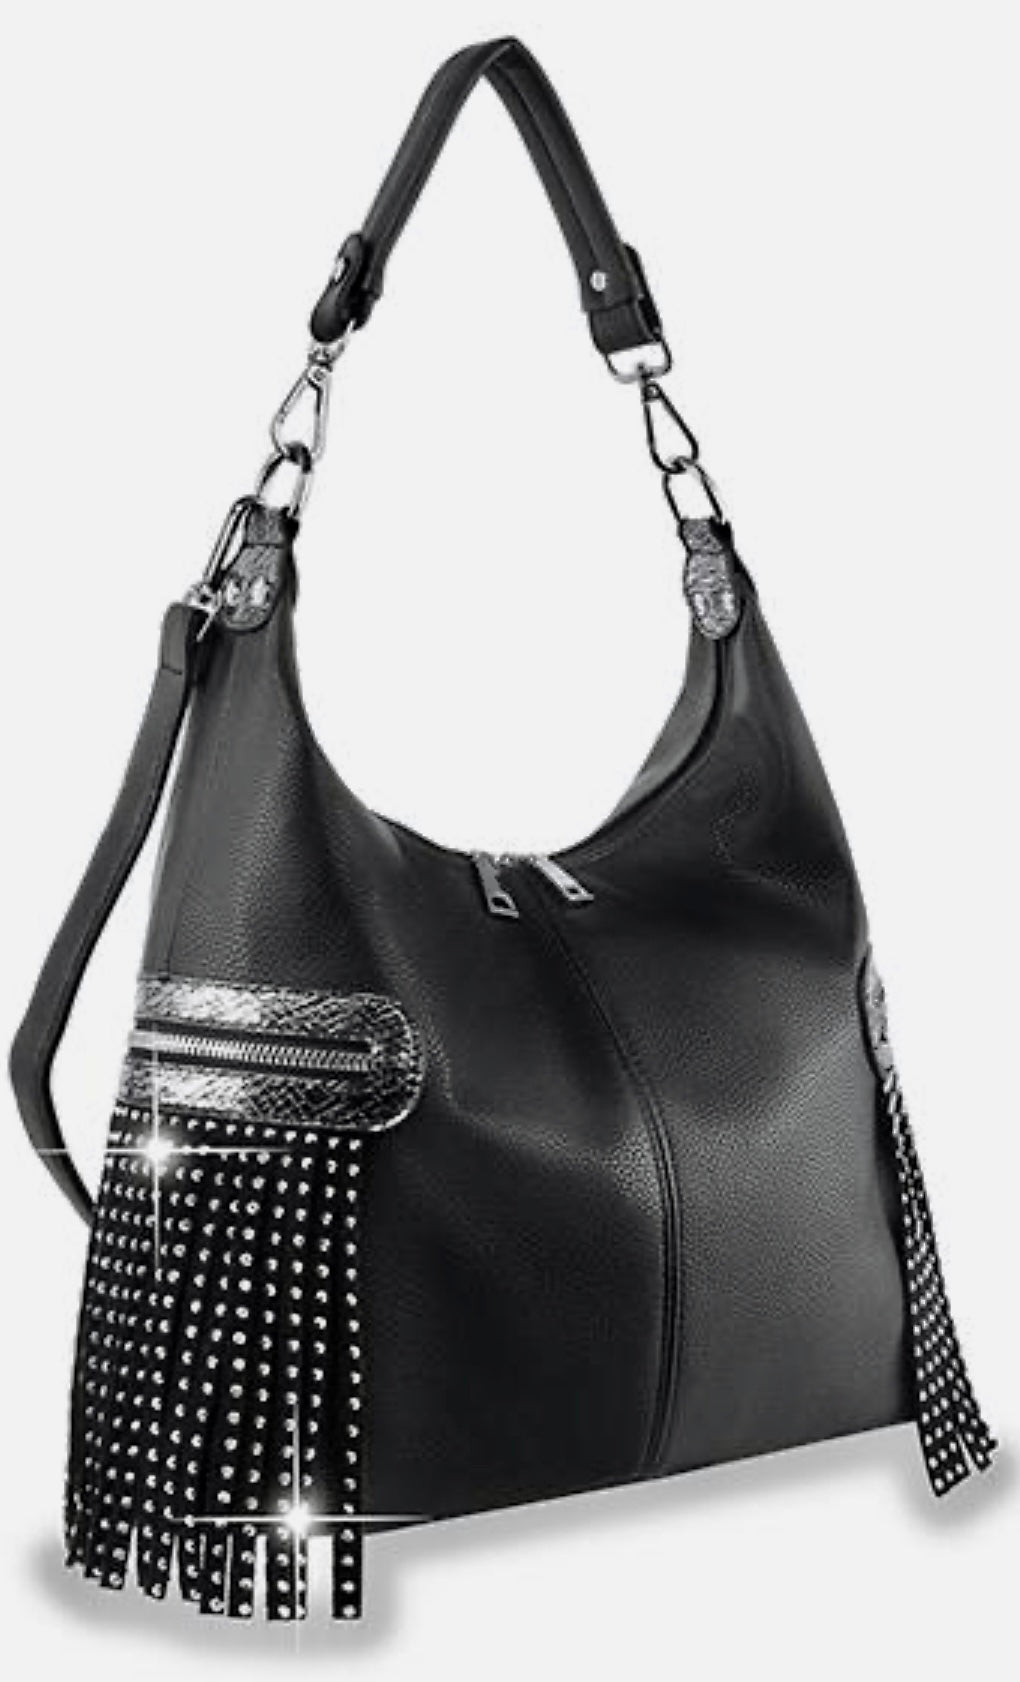 Black Fringe bling accented hobo handbag